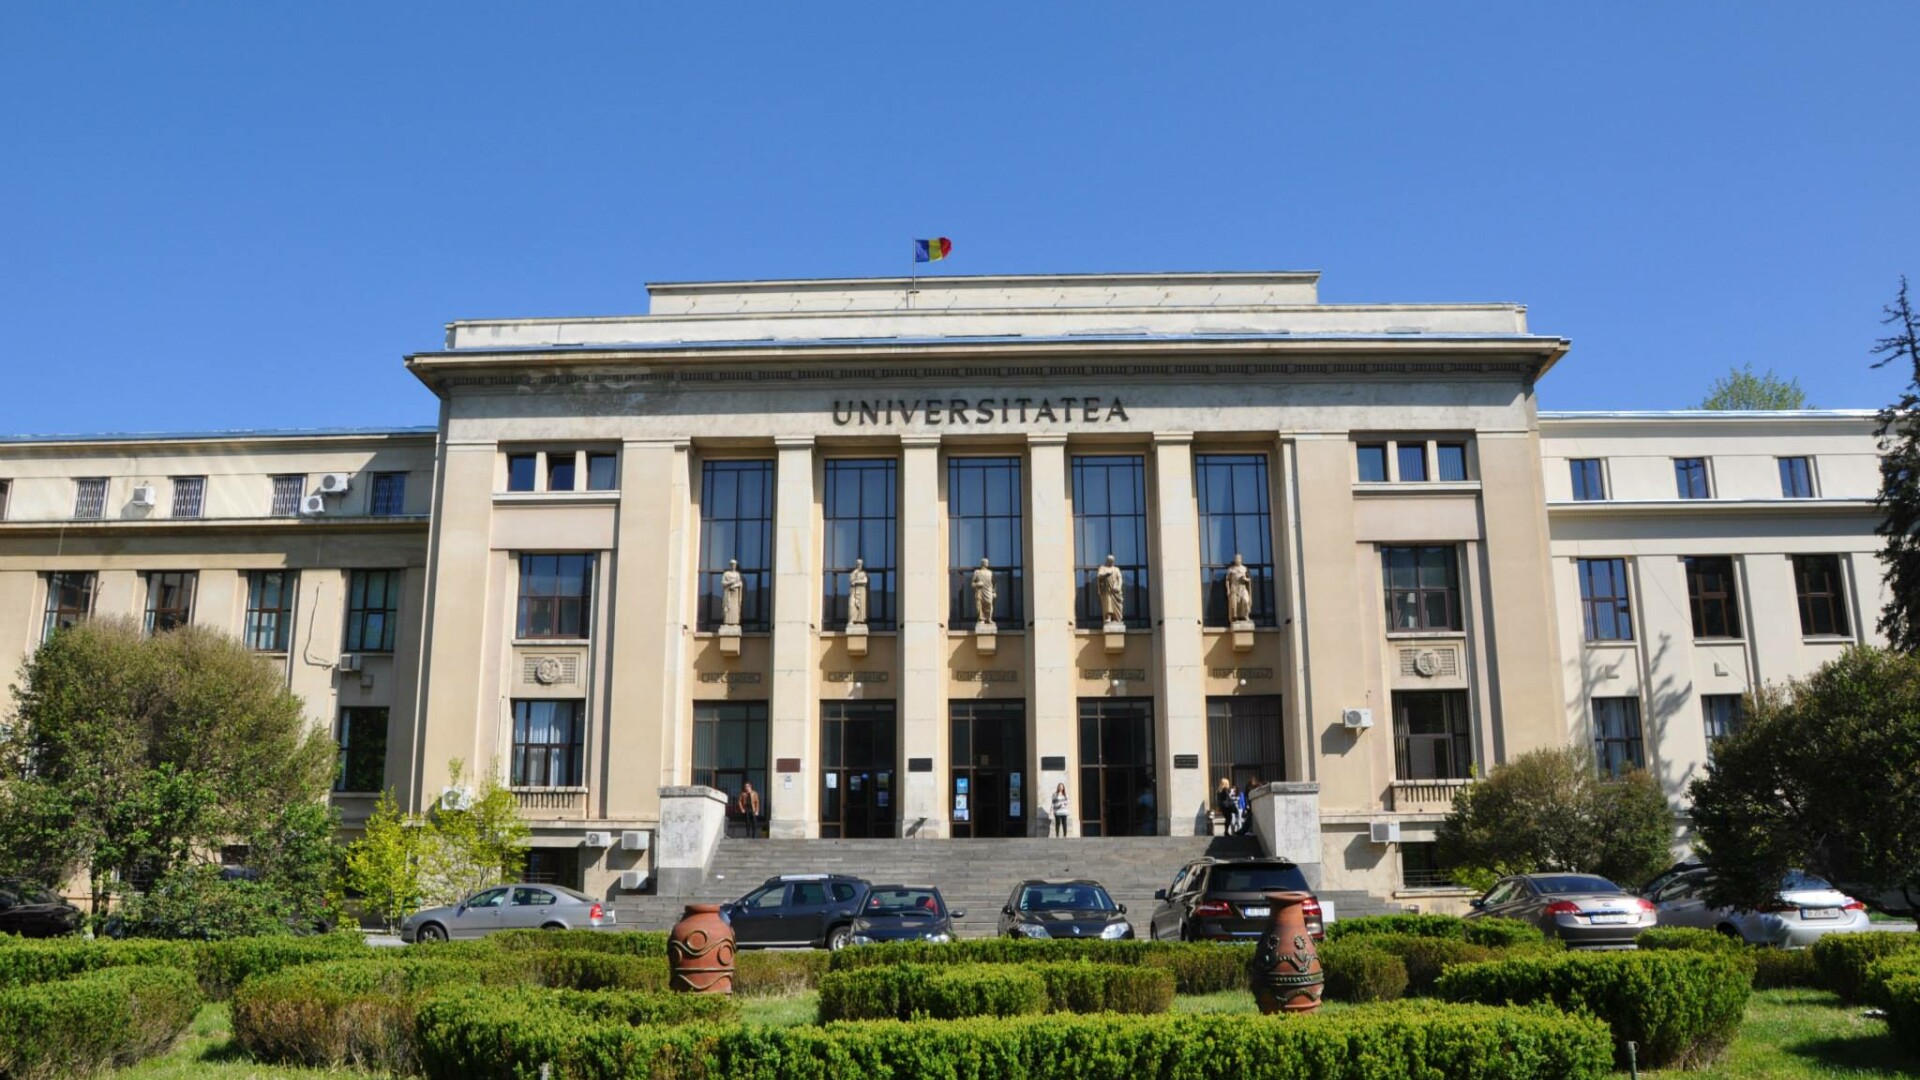 Universitatea din Bucuresti, Facultatea de Drept